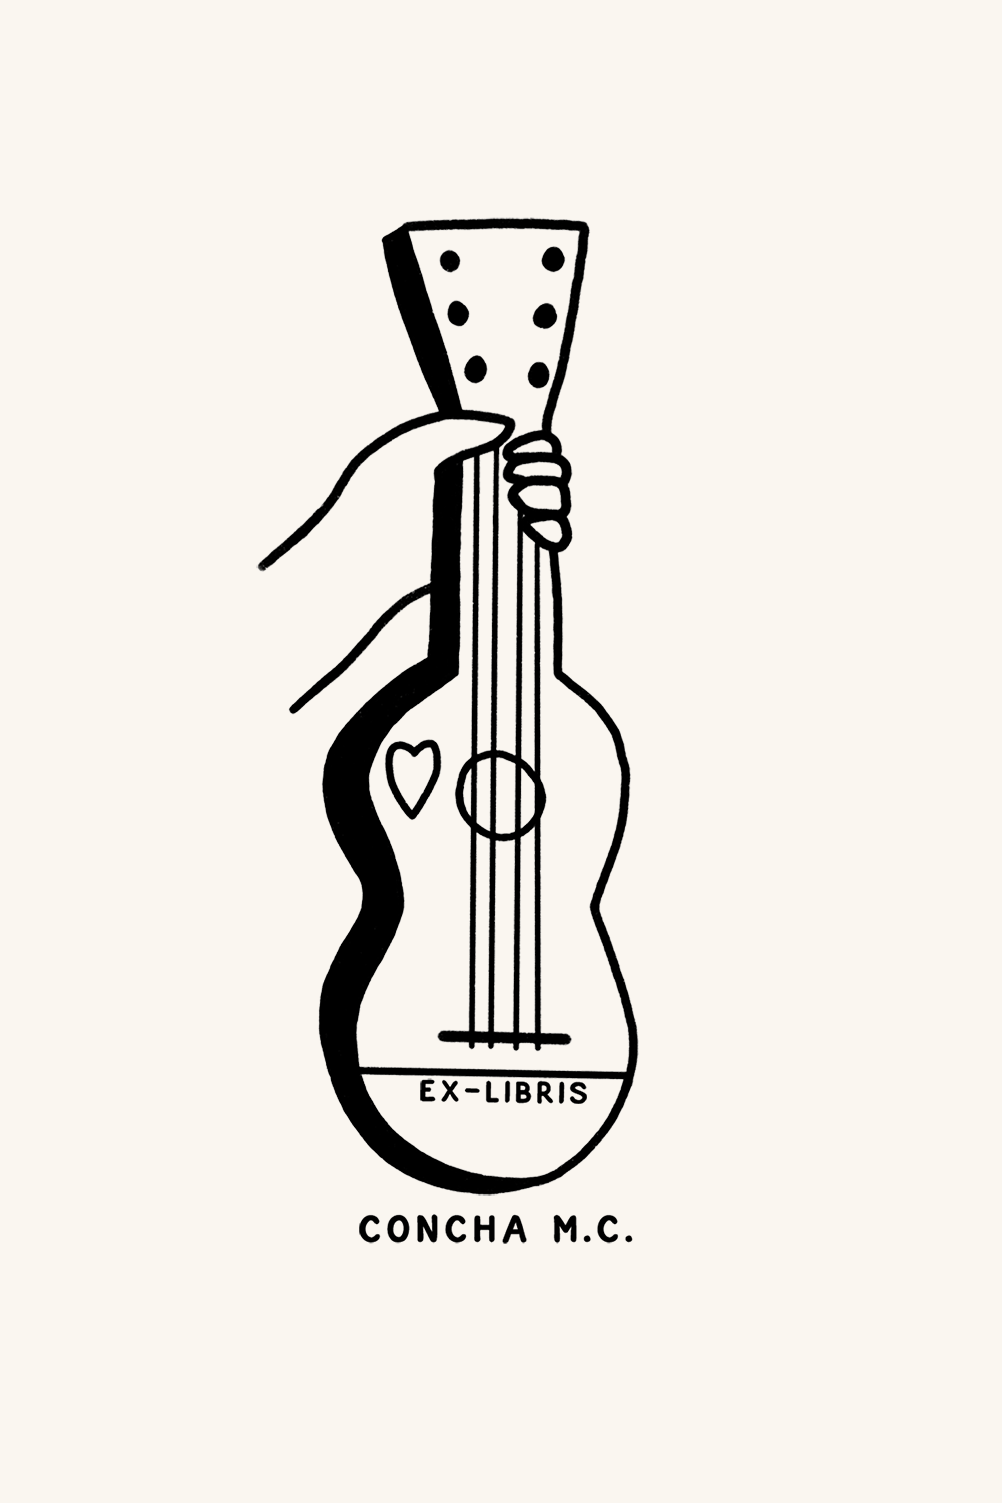 Dibujo de una mano sosteniendo una guitarra